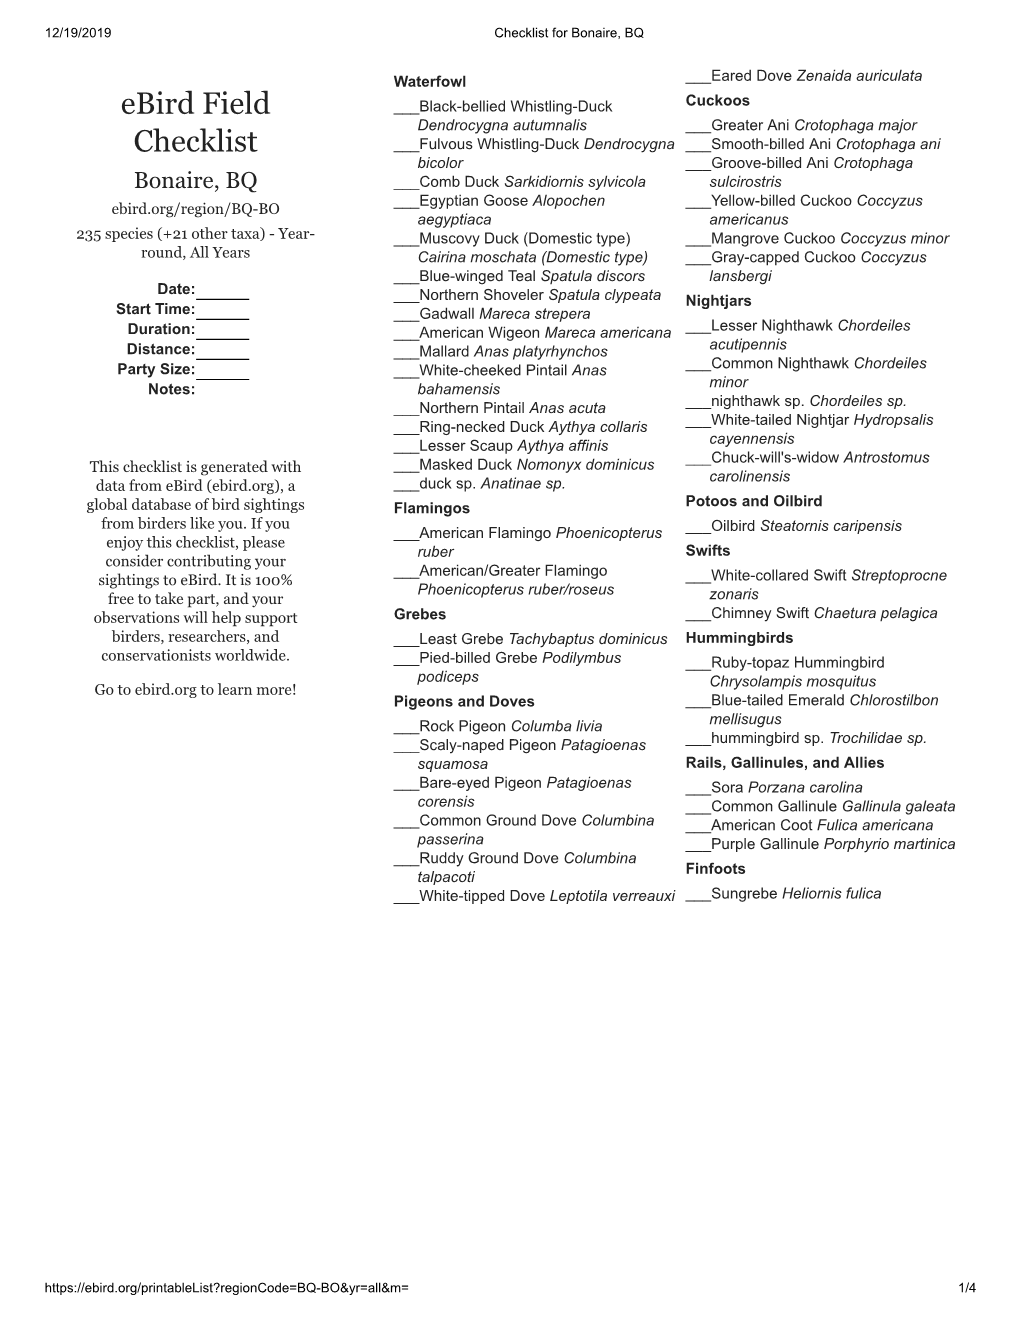 Ebird Field Checklist